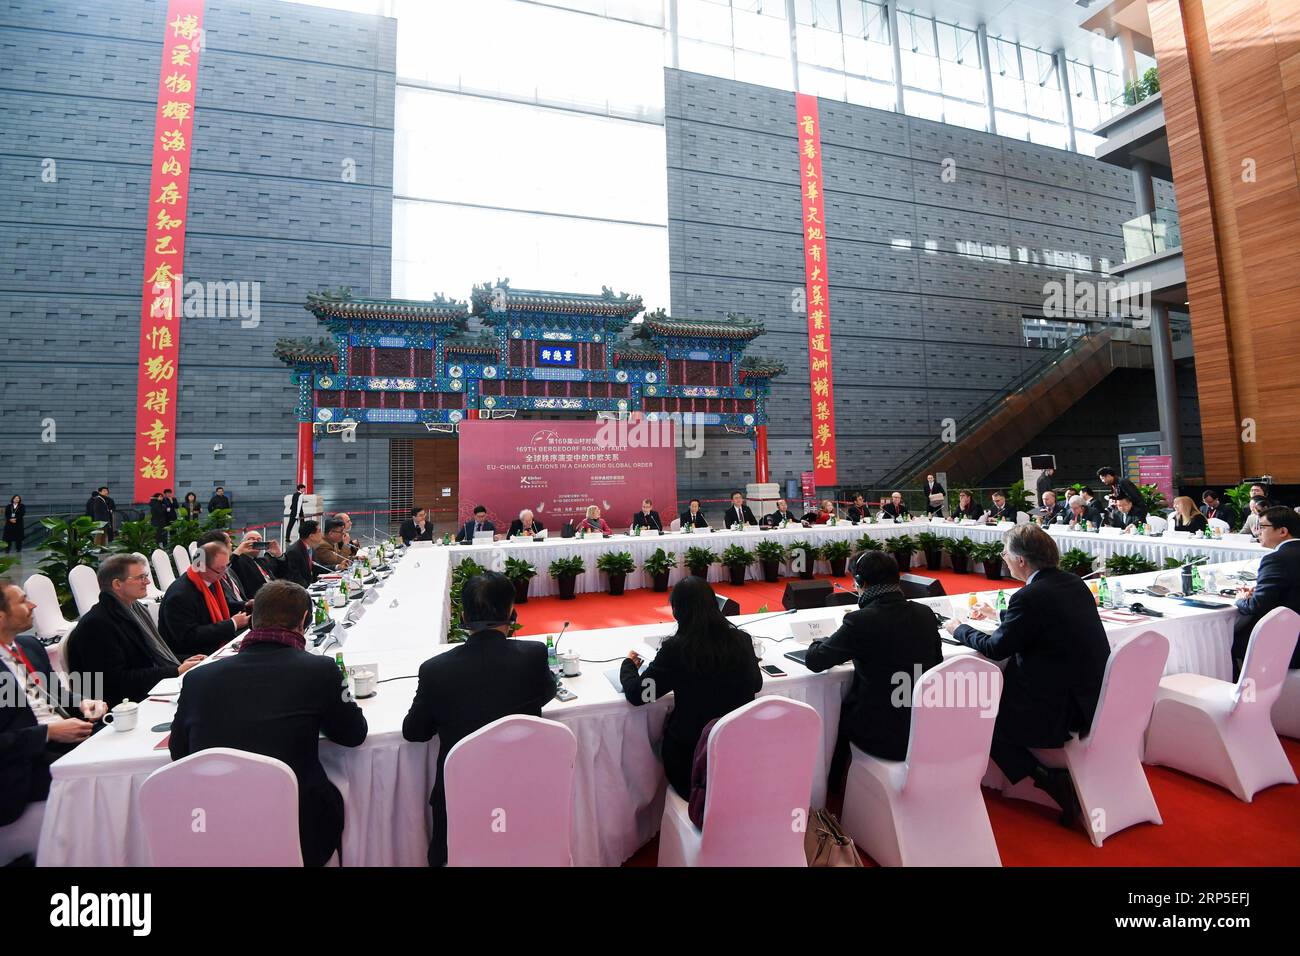 (181211) -- PÉKIN, 11 décembre 2018 -- une photo prise le 9 décembre 2018 montre une scène de la 169e Table ronde Bergedorf à Pékin, capitale de la Chine. )(mcg) TABLE RONDE CHINE-PÉKIN-BERGEDORF (CN) ChenxYehua PUBLICATIONxNOTxINxCHN Banque D'Images